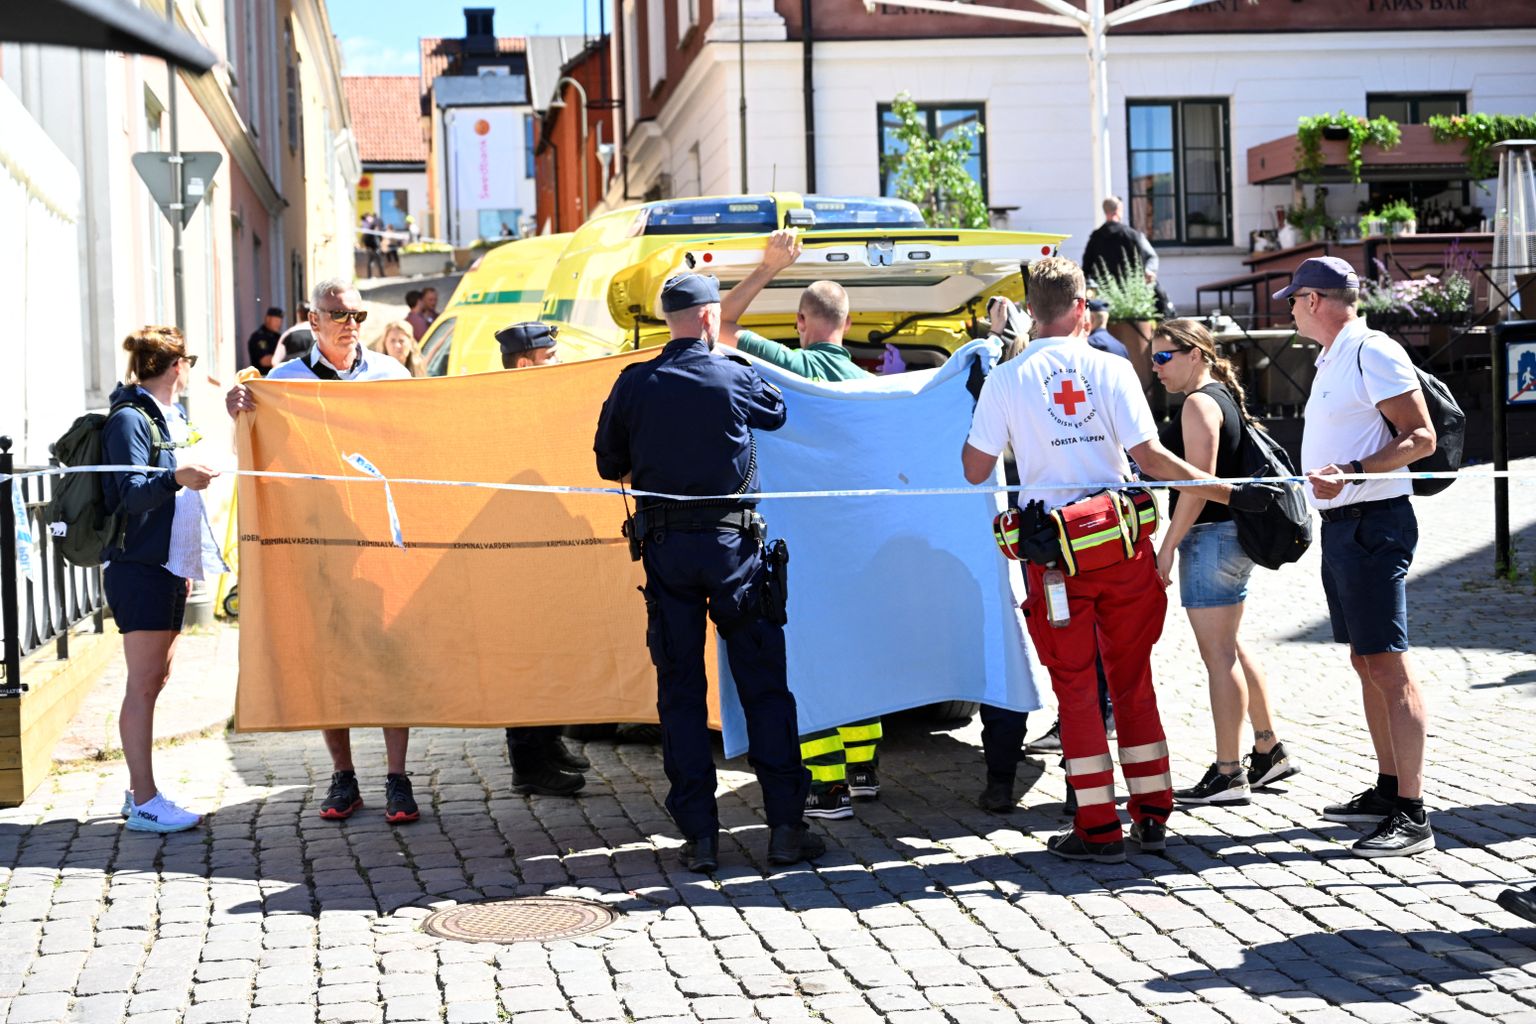 Rootsis Ojamaal Visbys pussitati 6. juulil 2022 naist. Parameedikud üritasid naise elu päästa ja ta viidi Visby haiglasse, kuid vigastused olid nii rasked, et ta suri